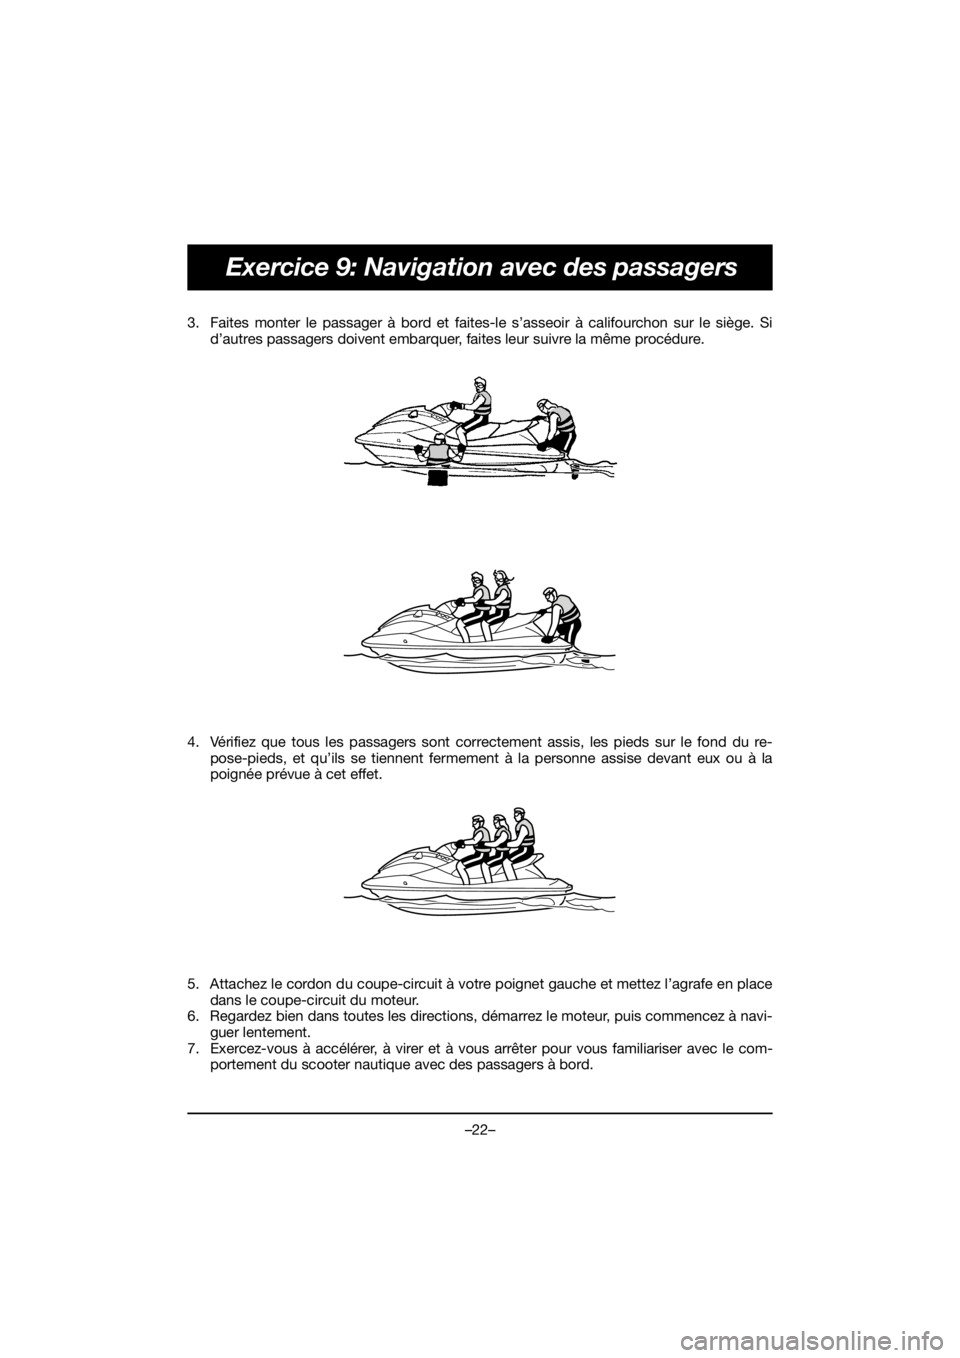 YAMAHA EX DELUXE 2019  Bruksanvisningar (in Swedish) –22–
Exercice 9: Navigation avec des passagers
3. Faites monter le passager à bord et faites-le s’asseoir à califourchon sur le siège. Si
d’autres passagers doivent embarquer, faites leur s